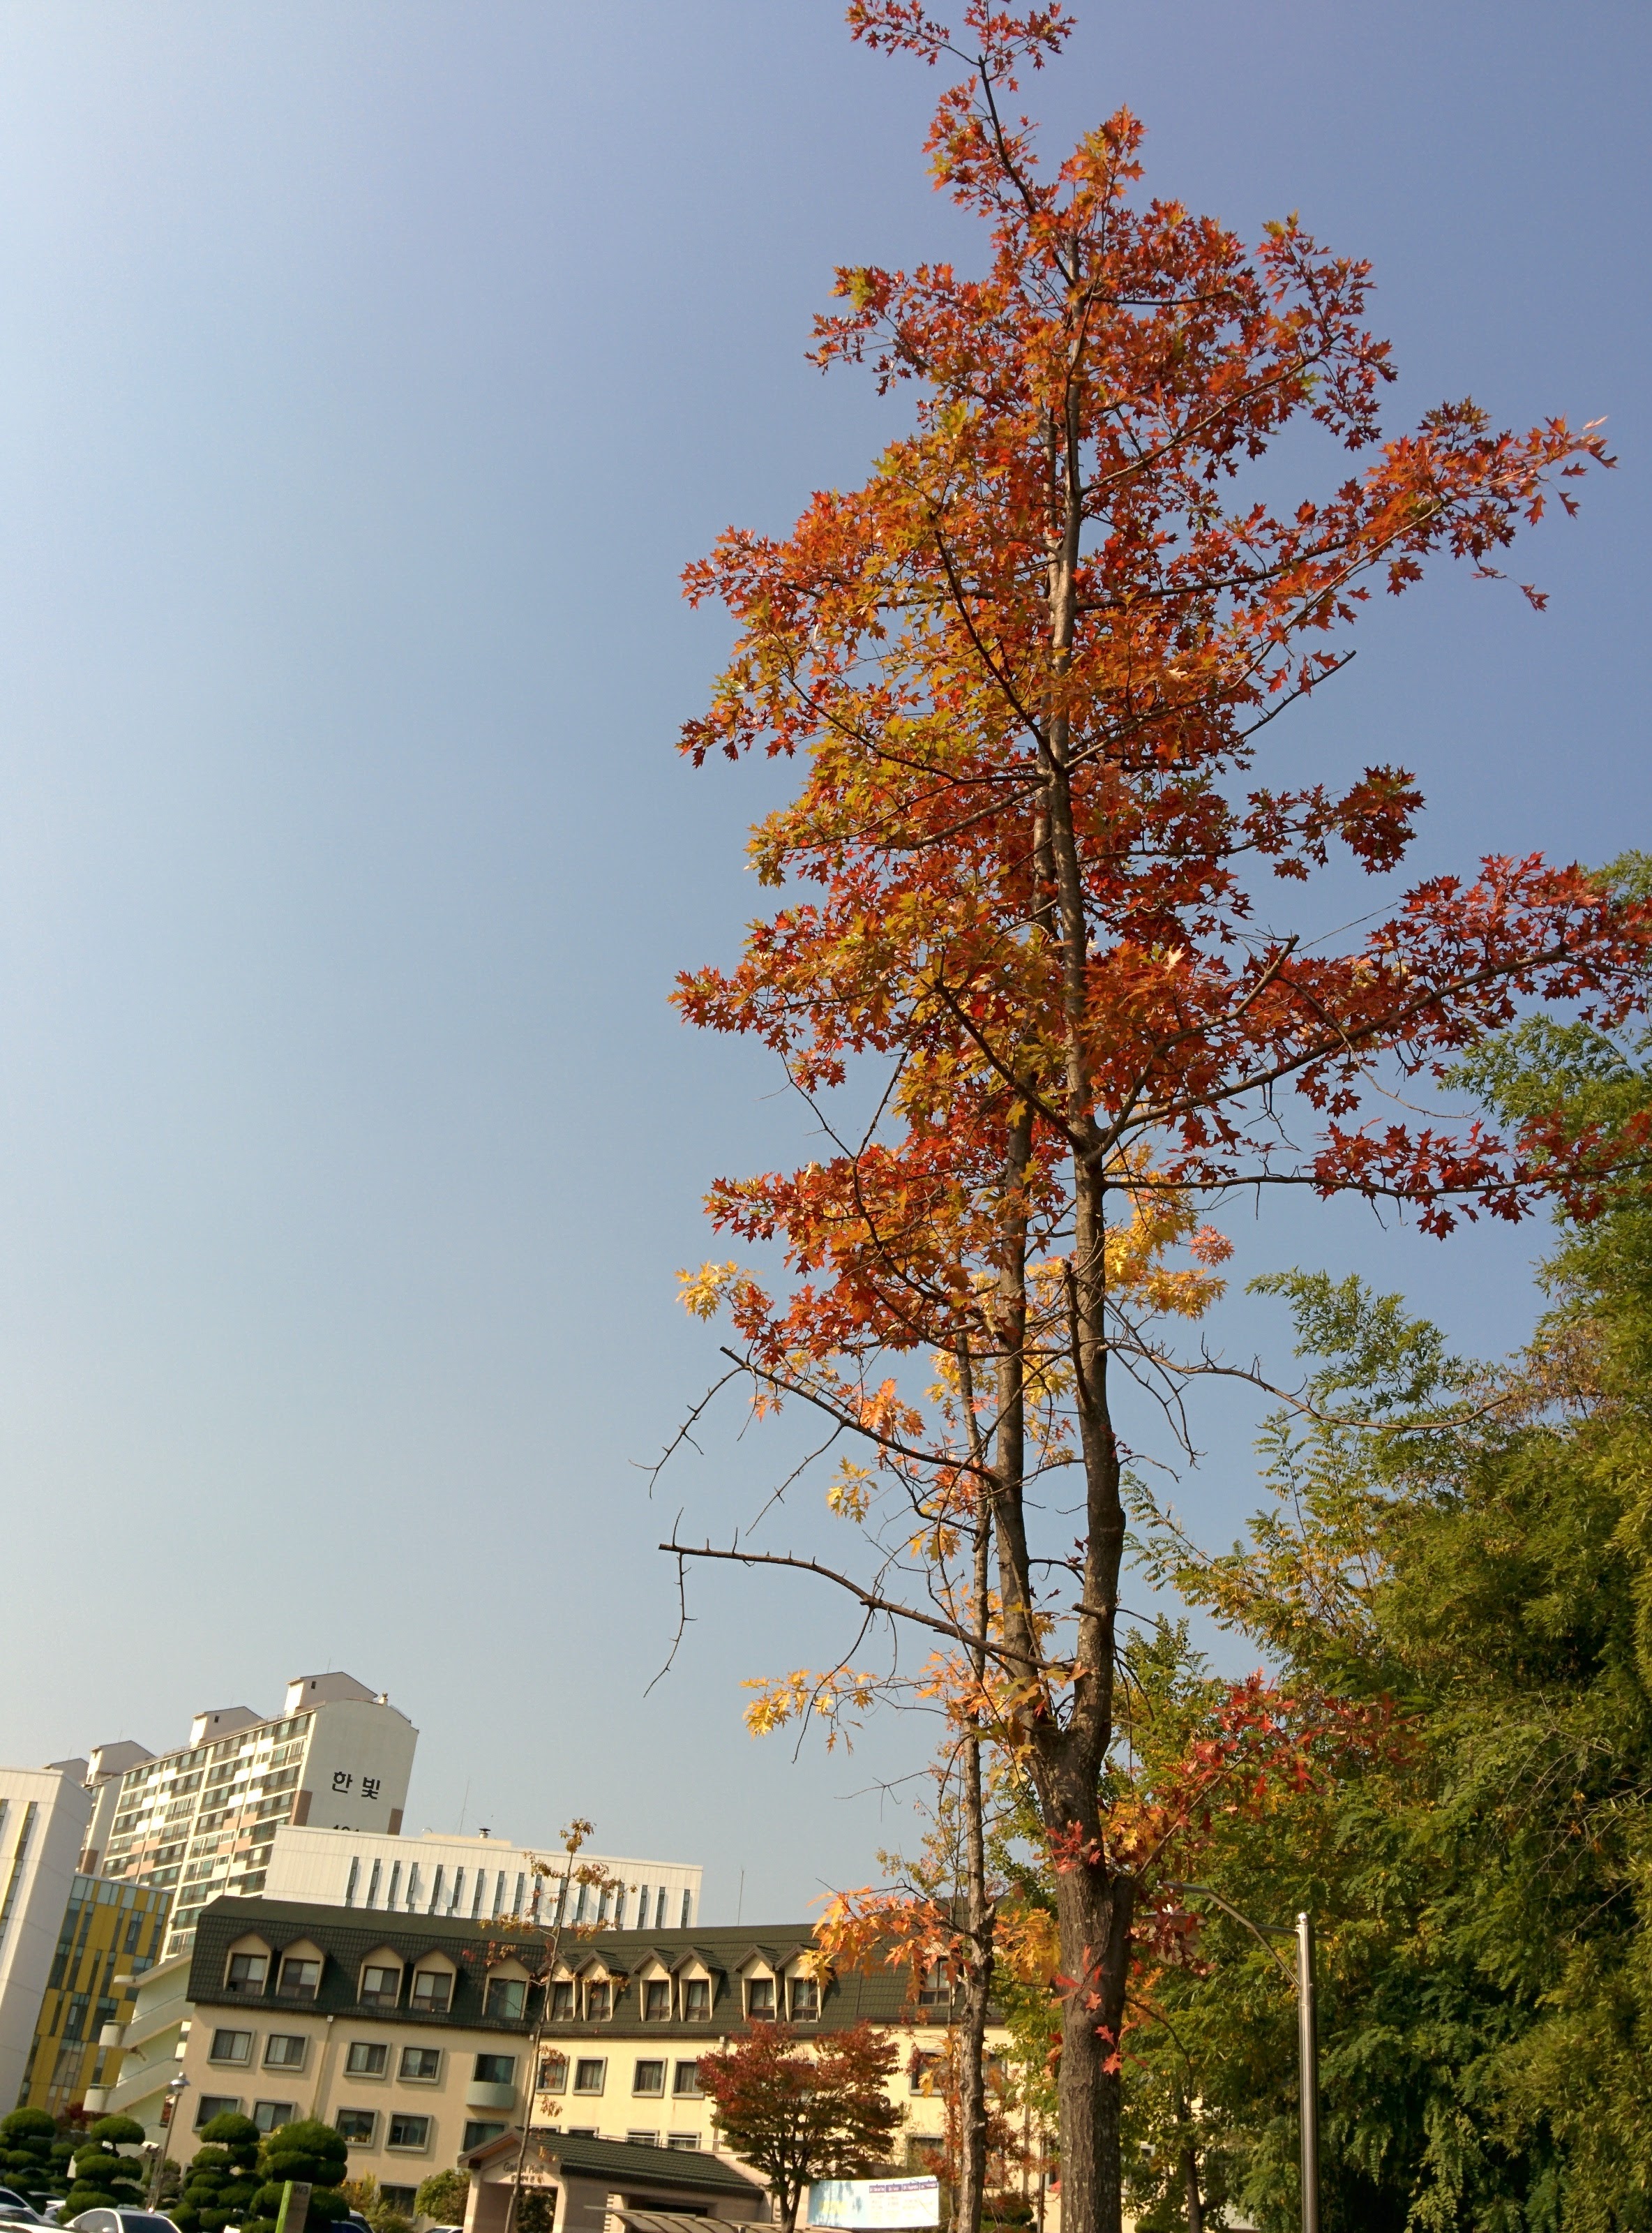 IMG_20151029_121010.jpg 드디어 이름을 알게 된 이쁜 단풍잎 나무... 대왕참나무